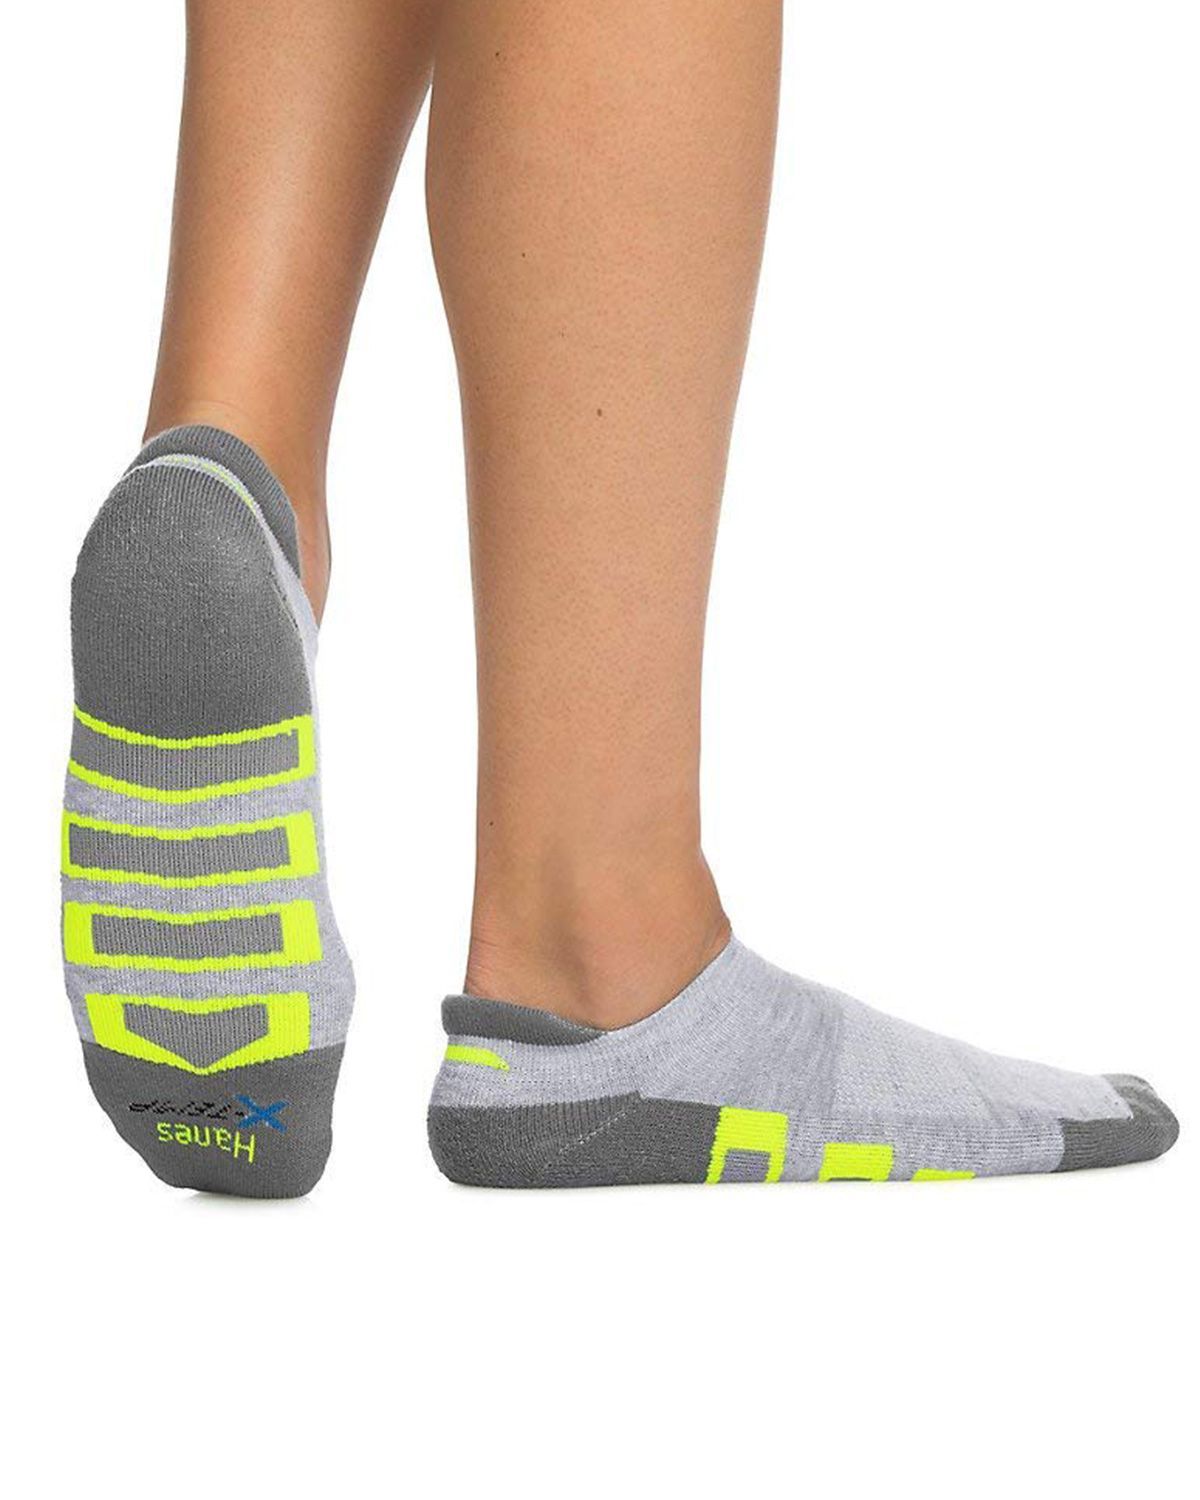 heel shield socks